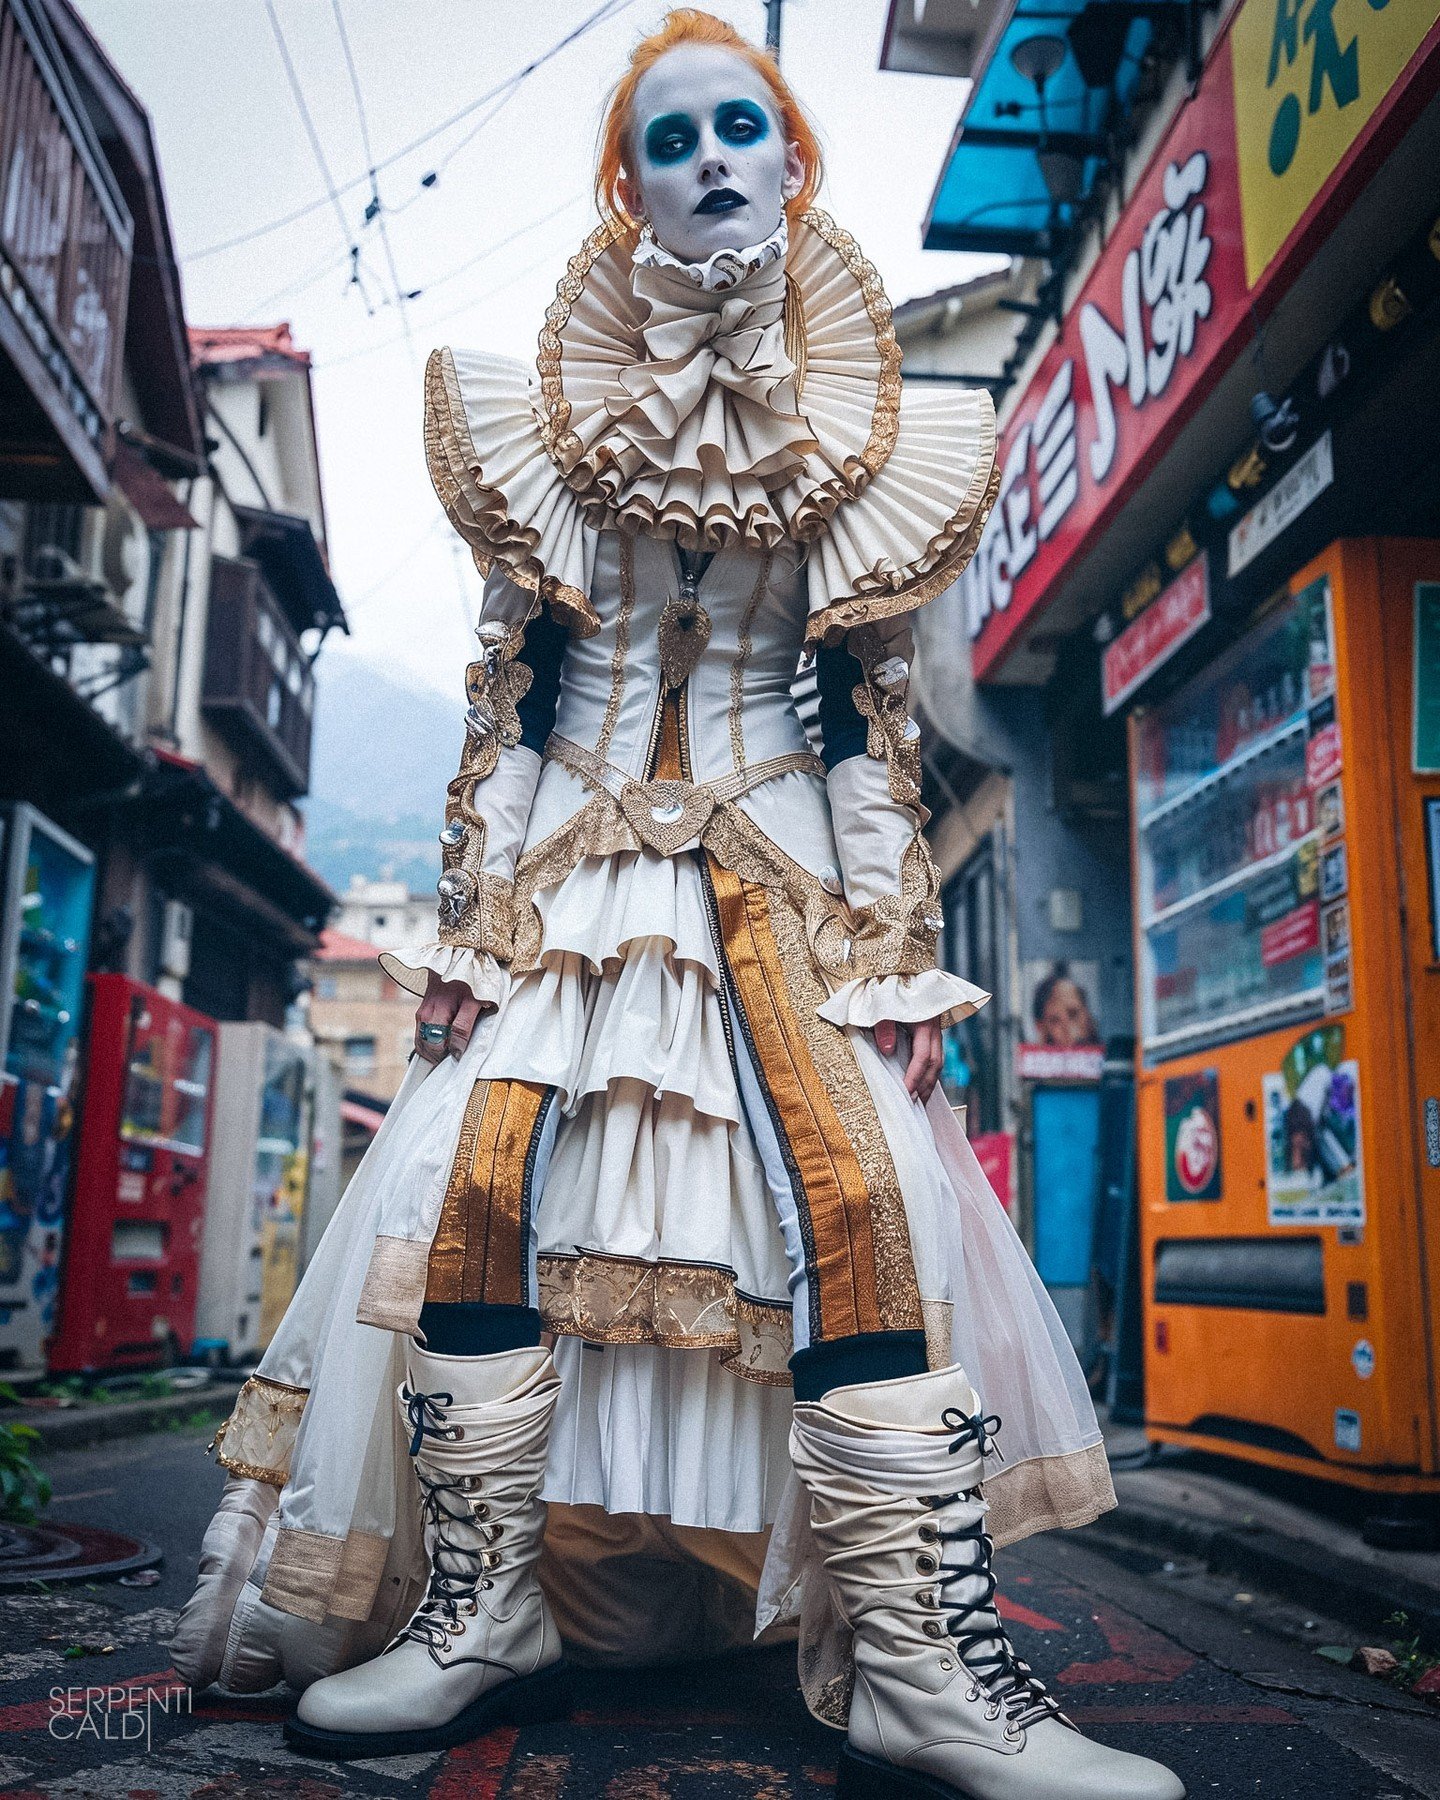 Icons: Phase 3. Fashion photography maximalism blended with images of mummified Catholic Saints. Outputs reblended with additional Harajuku street fashion image references. 2/3

#icons #fashion #fashionmaximalism #harajuku # maximalism #midjourney #m